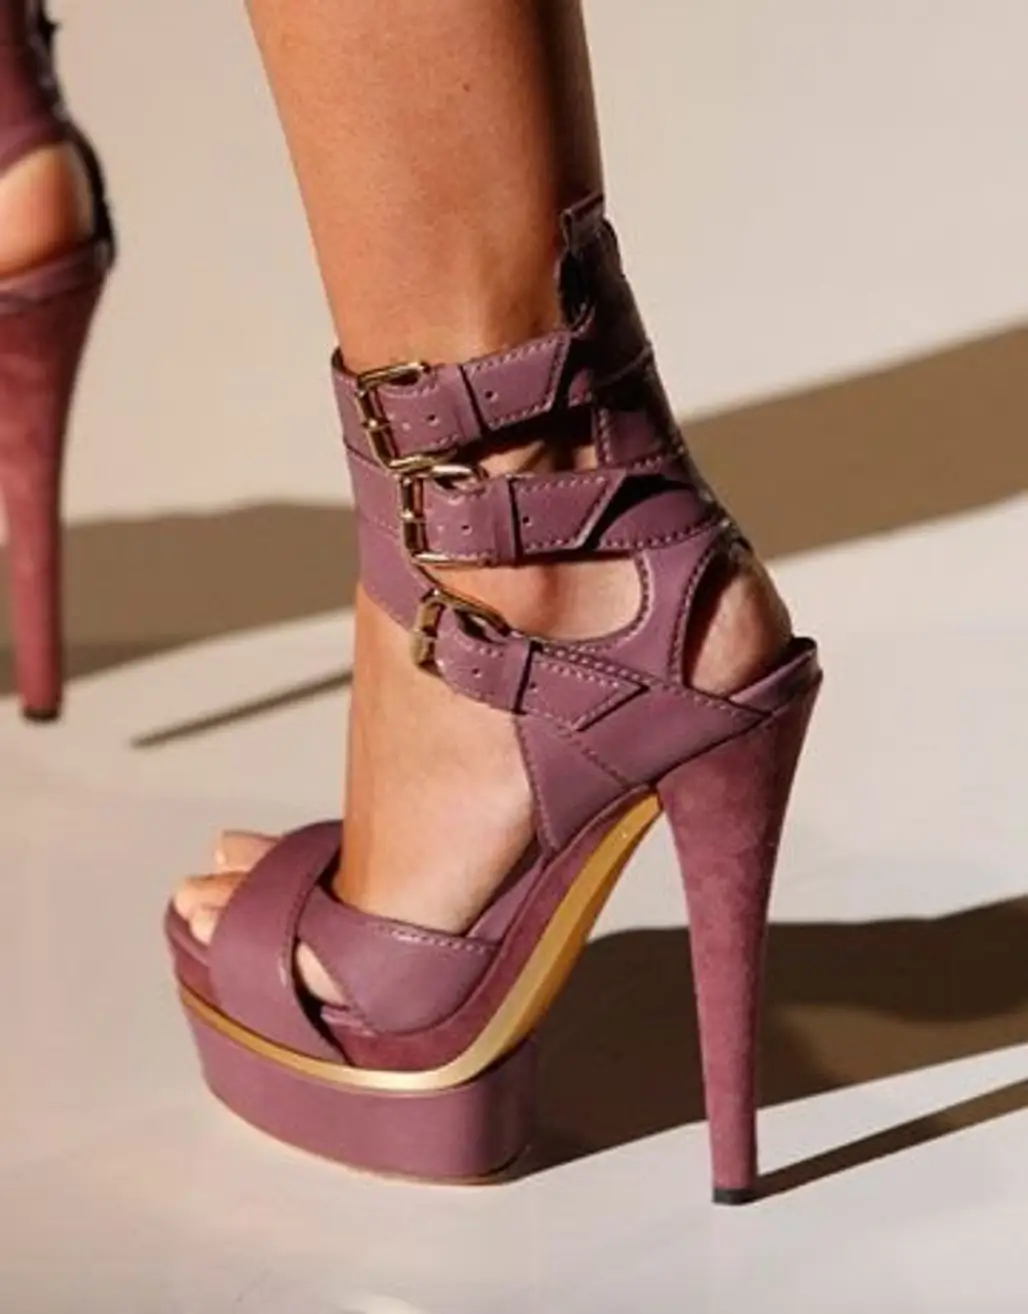 footwear,high heeled footwear,pink,leg,spring,